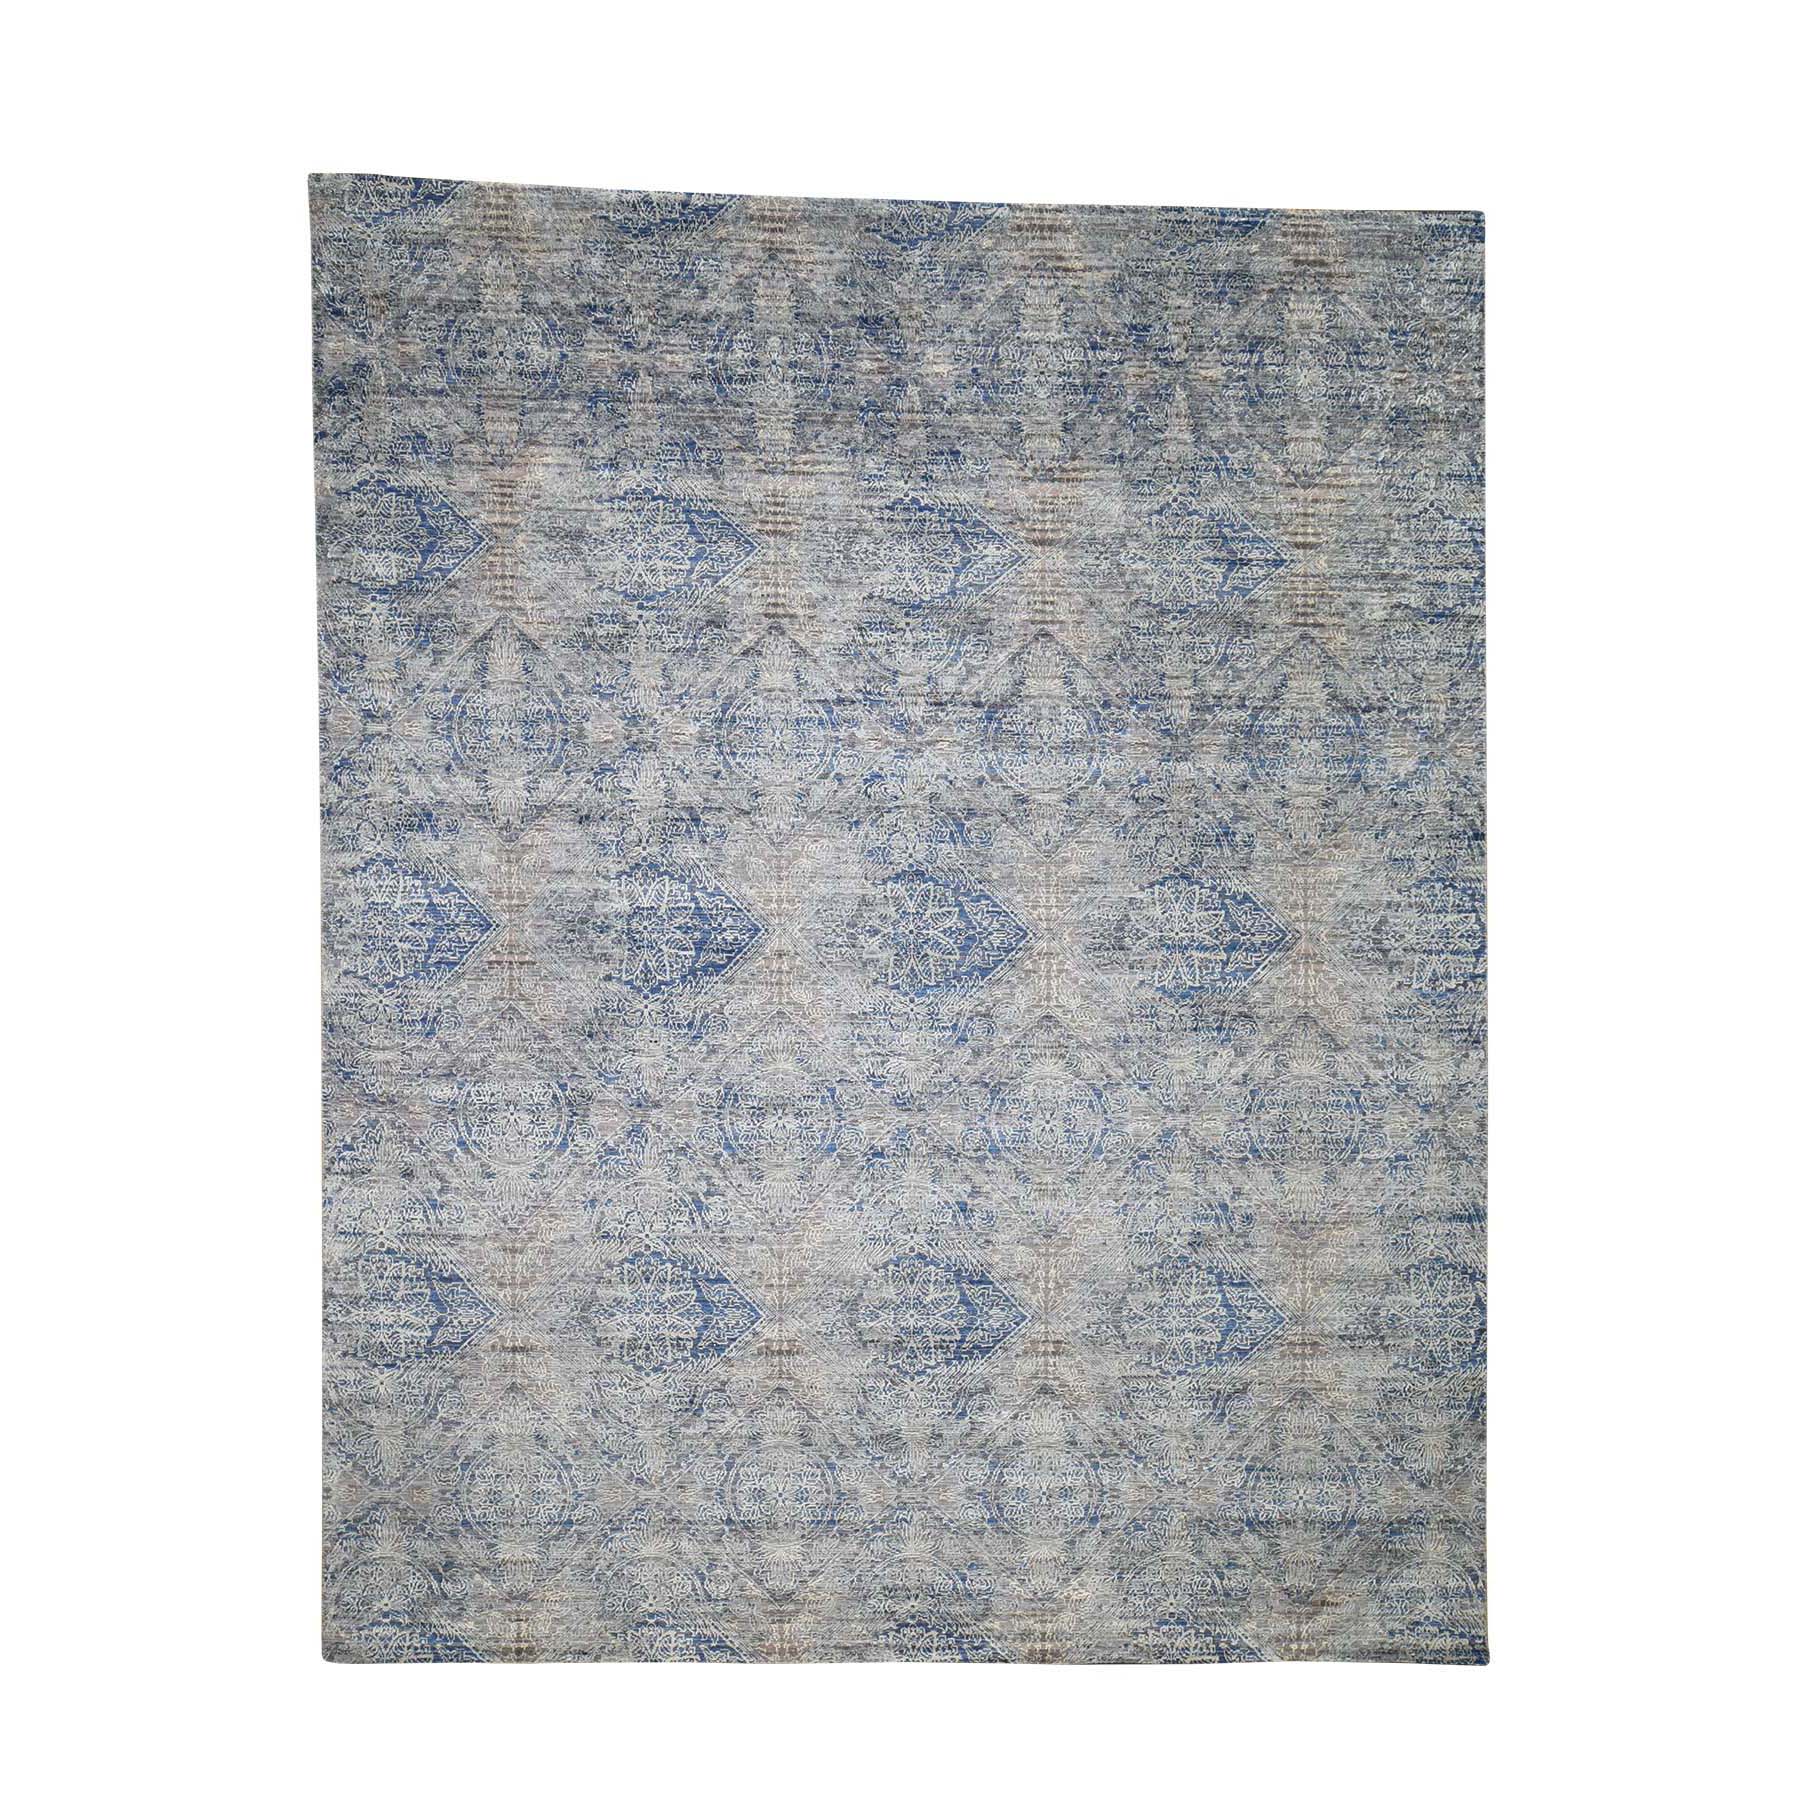 8'x10' Silk With Textured Wool Denim Blue Erased Rosette Design Hand Woven Oriental Rug 